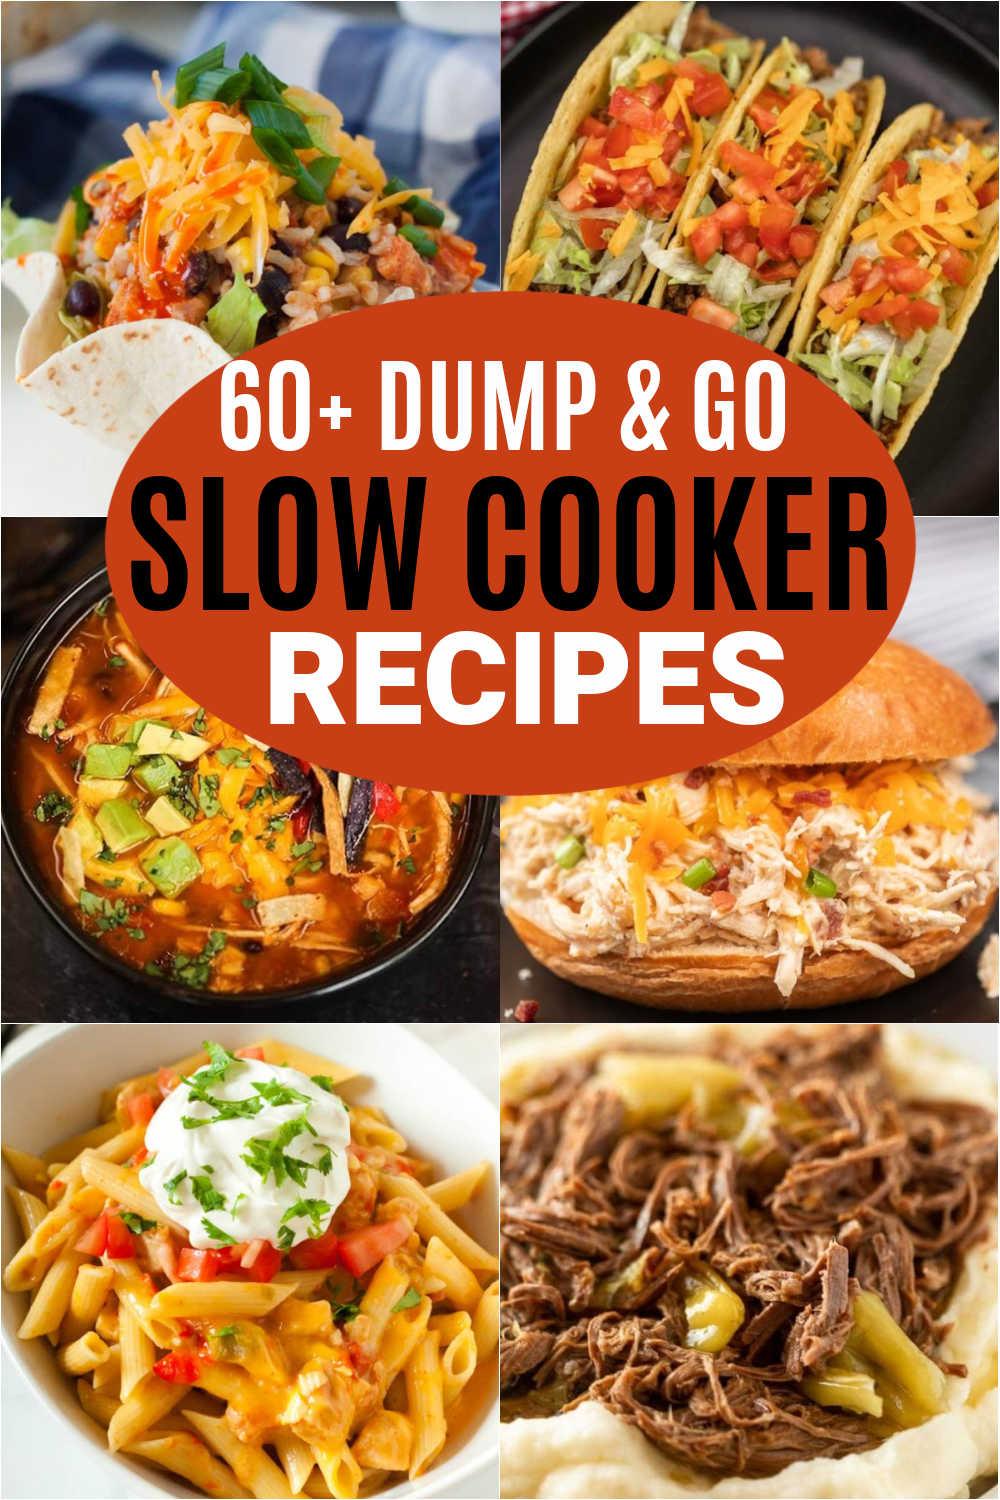 Dump and Crock pot Recipes - easy ideas